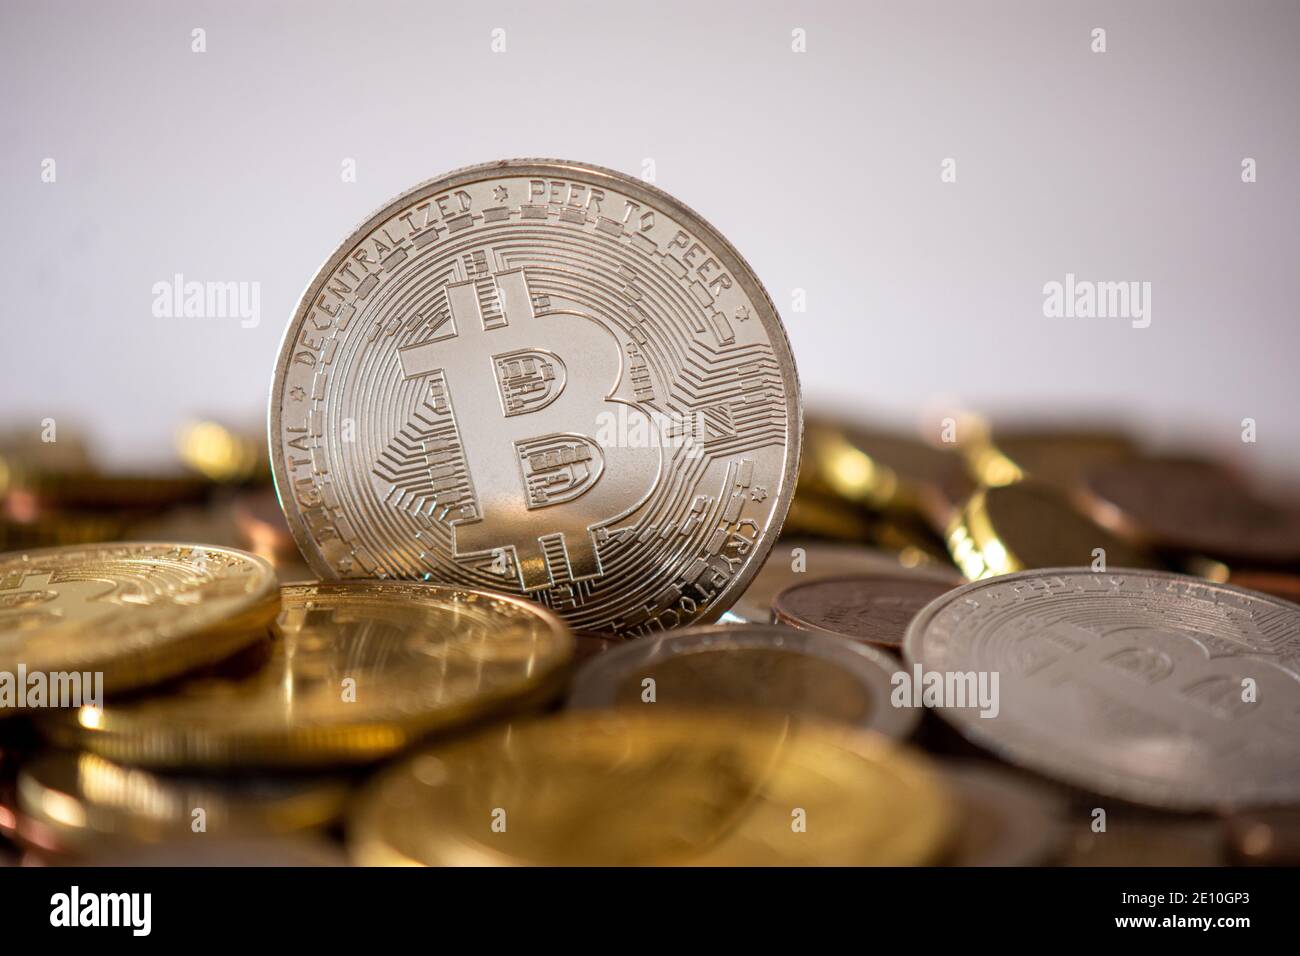 Un bitcoin d'argent se tenant parmi de nombreuses pièces floues. Le Bitcoin est une crypto-monnaie, une monnaie numérique décentralisée sans banque centrale Banque D'Images